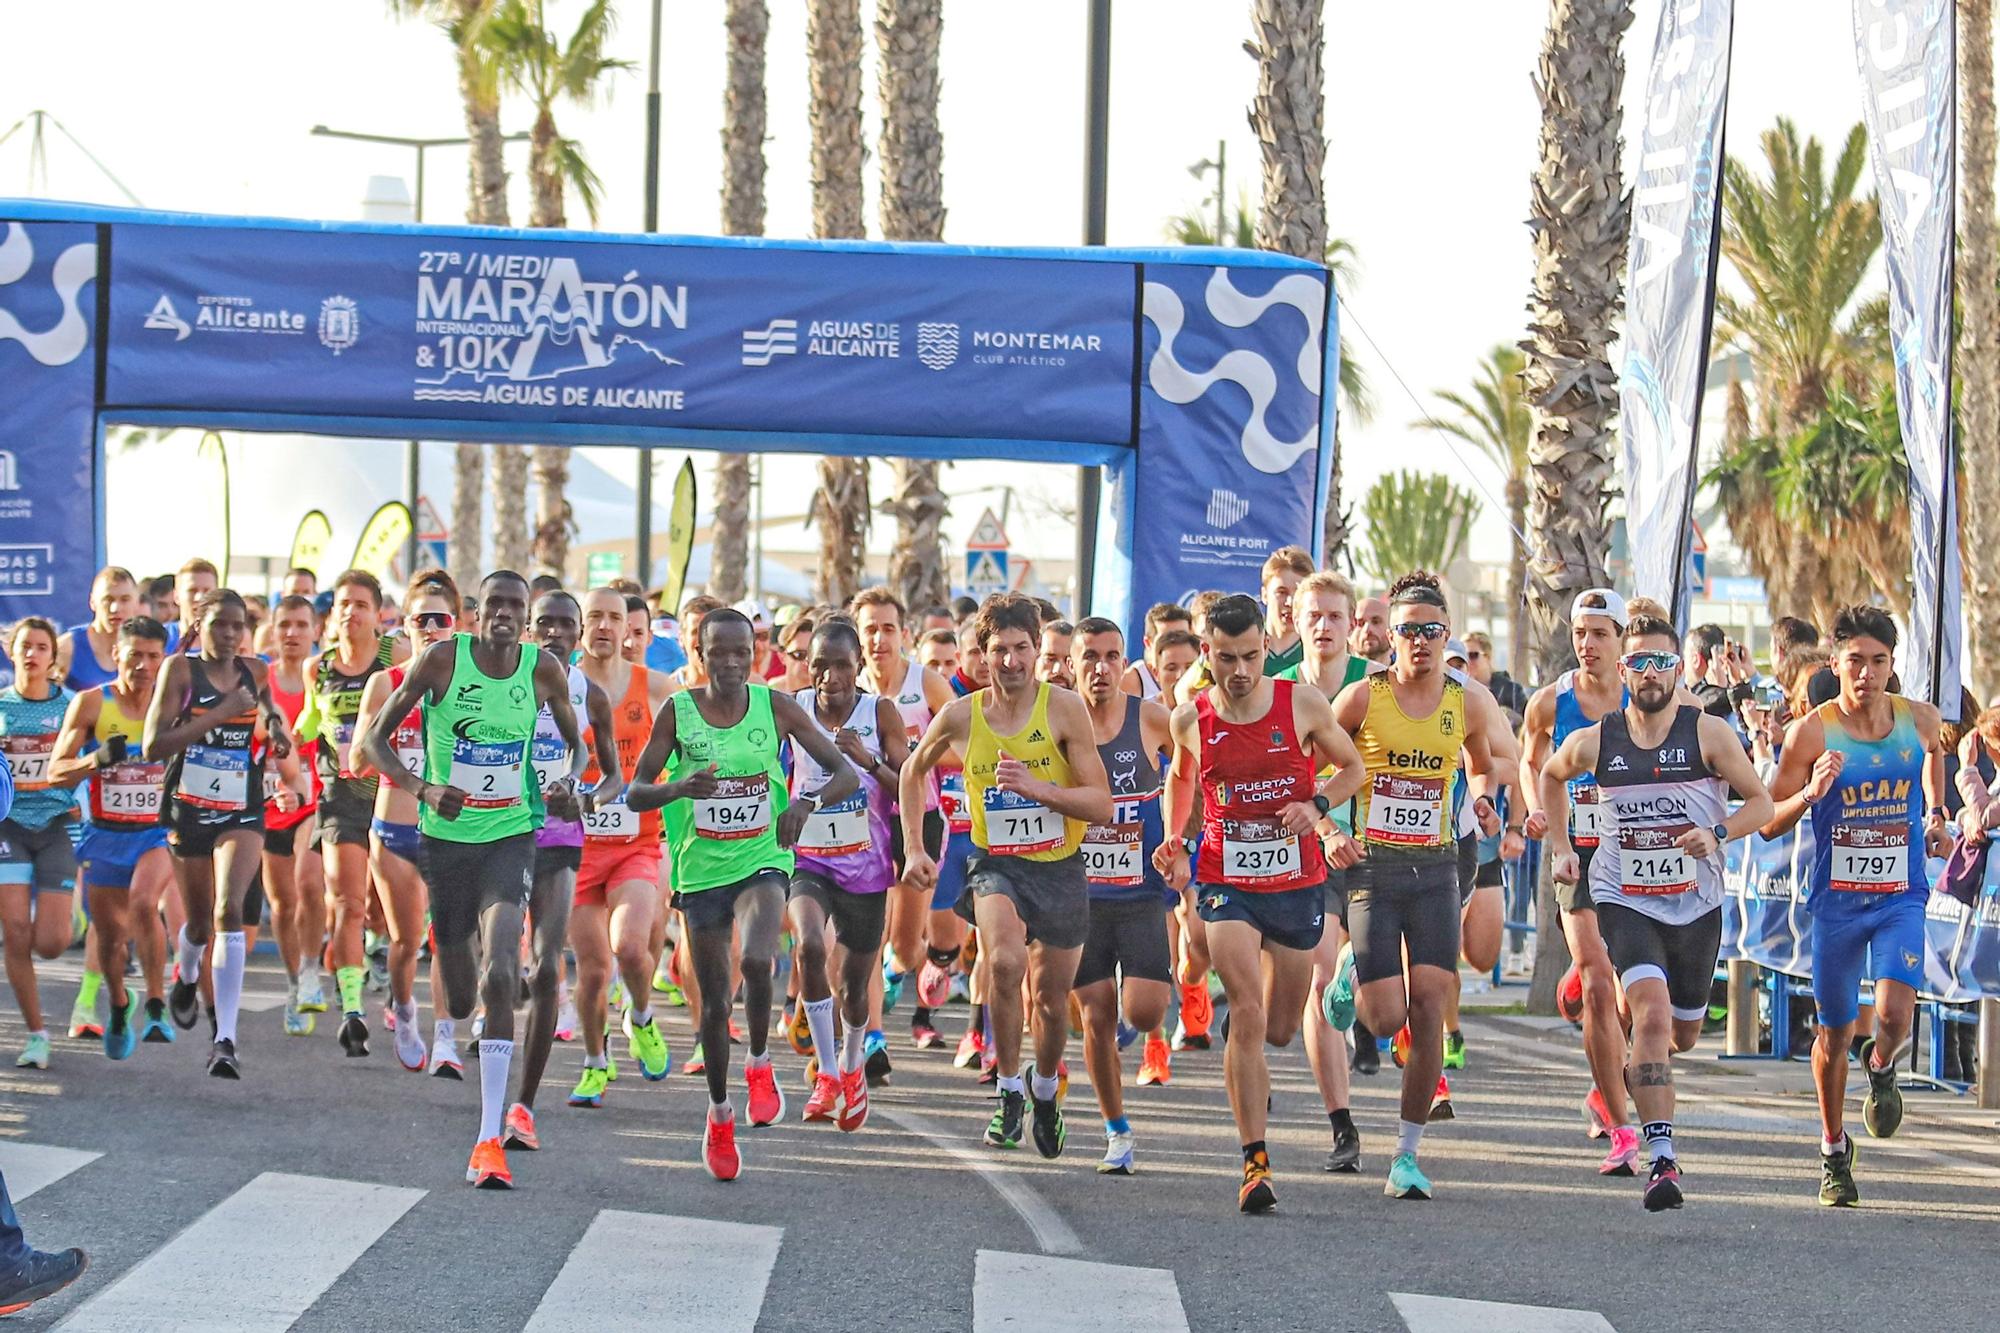 Media maratón Alicante | Las mejores imágenes de la Media Maratón de  Alicante